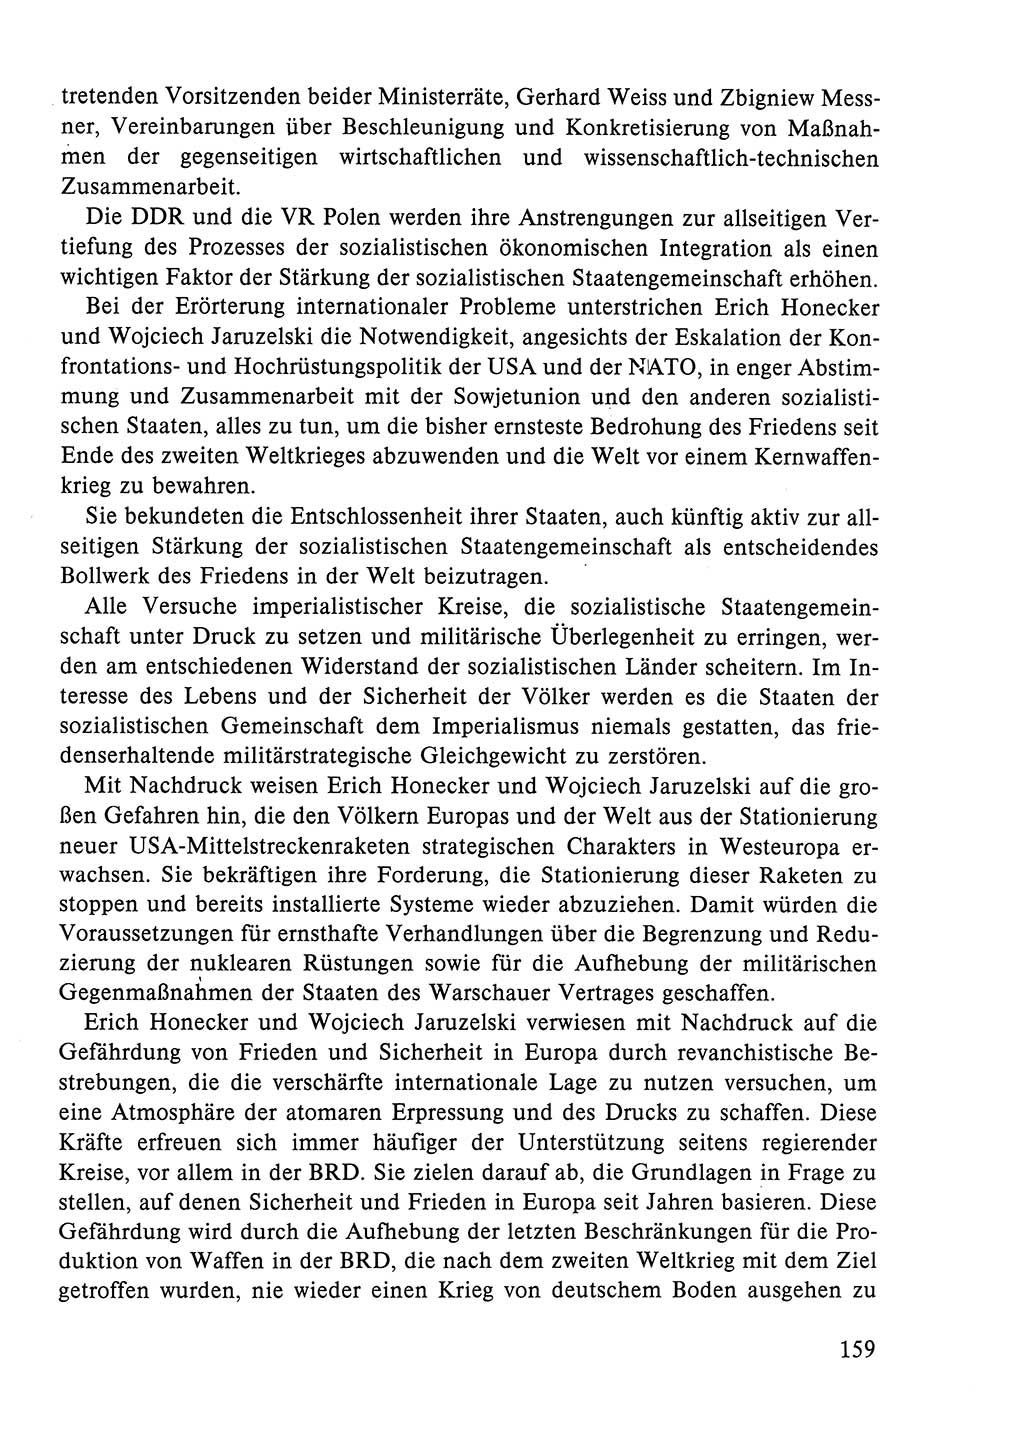 Dokumente der Sozialistischen Einheitspartei Deutschlands (SED) [Deutsche Demokratische Republik (DDR)] 1984-1985, Seite 268 (Dok. SED DDR 1984-1985, S. 268)